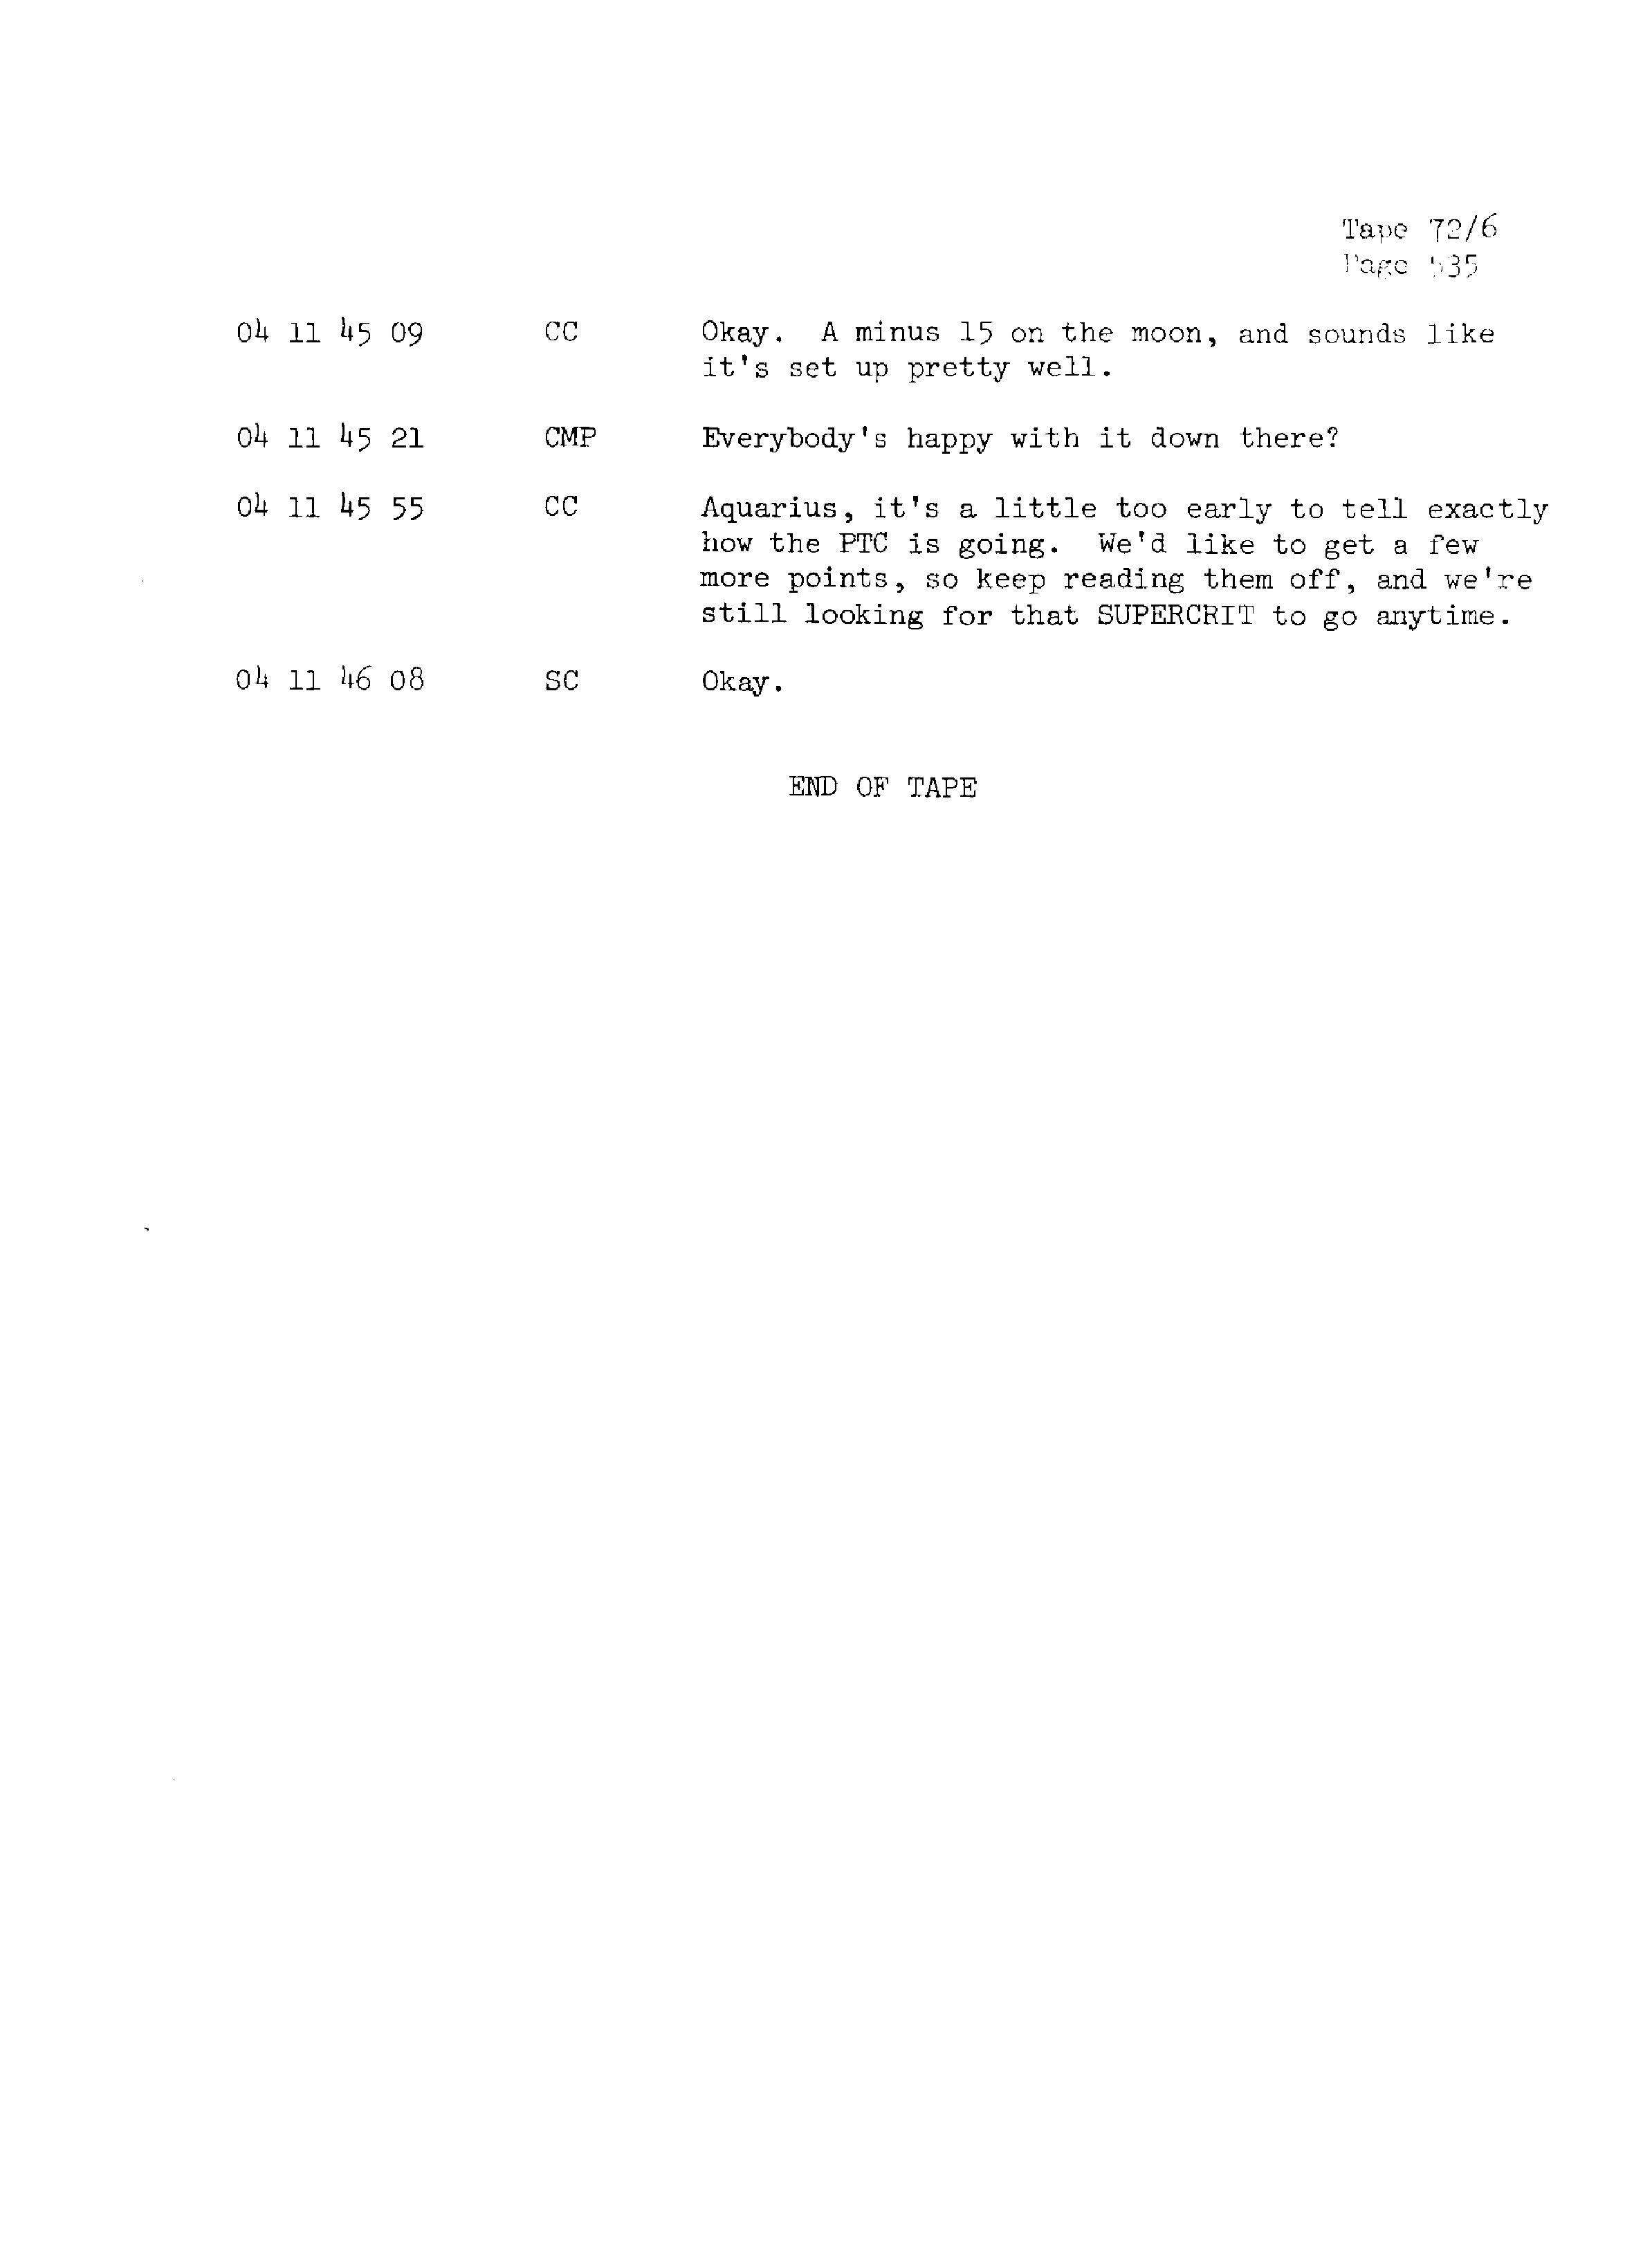 Page 542 of Apollo 13’s original transcript